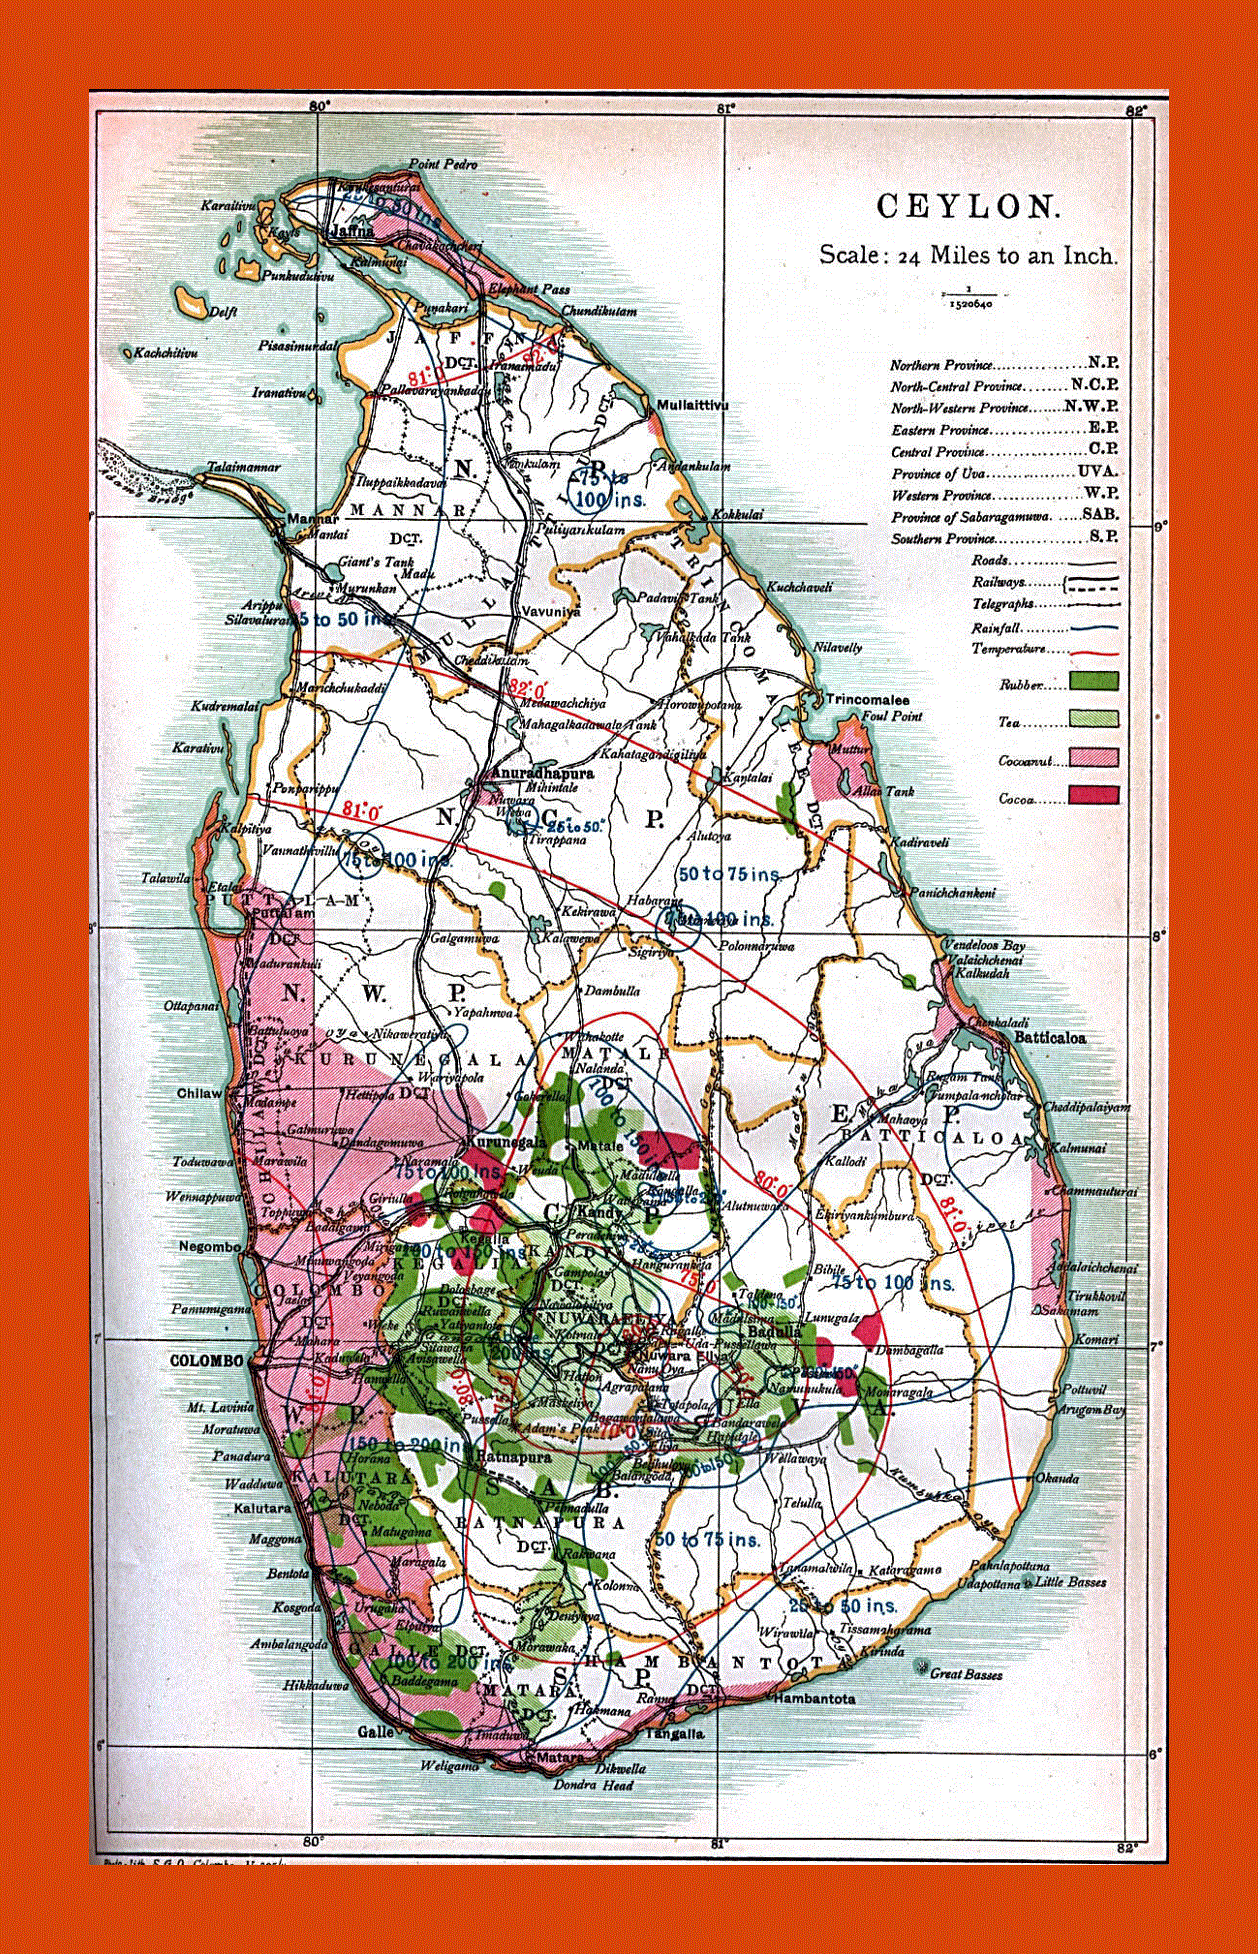 Old map of Ceylon (Sri Lanka) - 1914